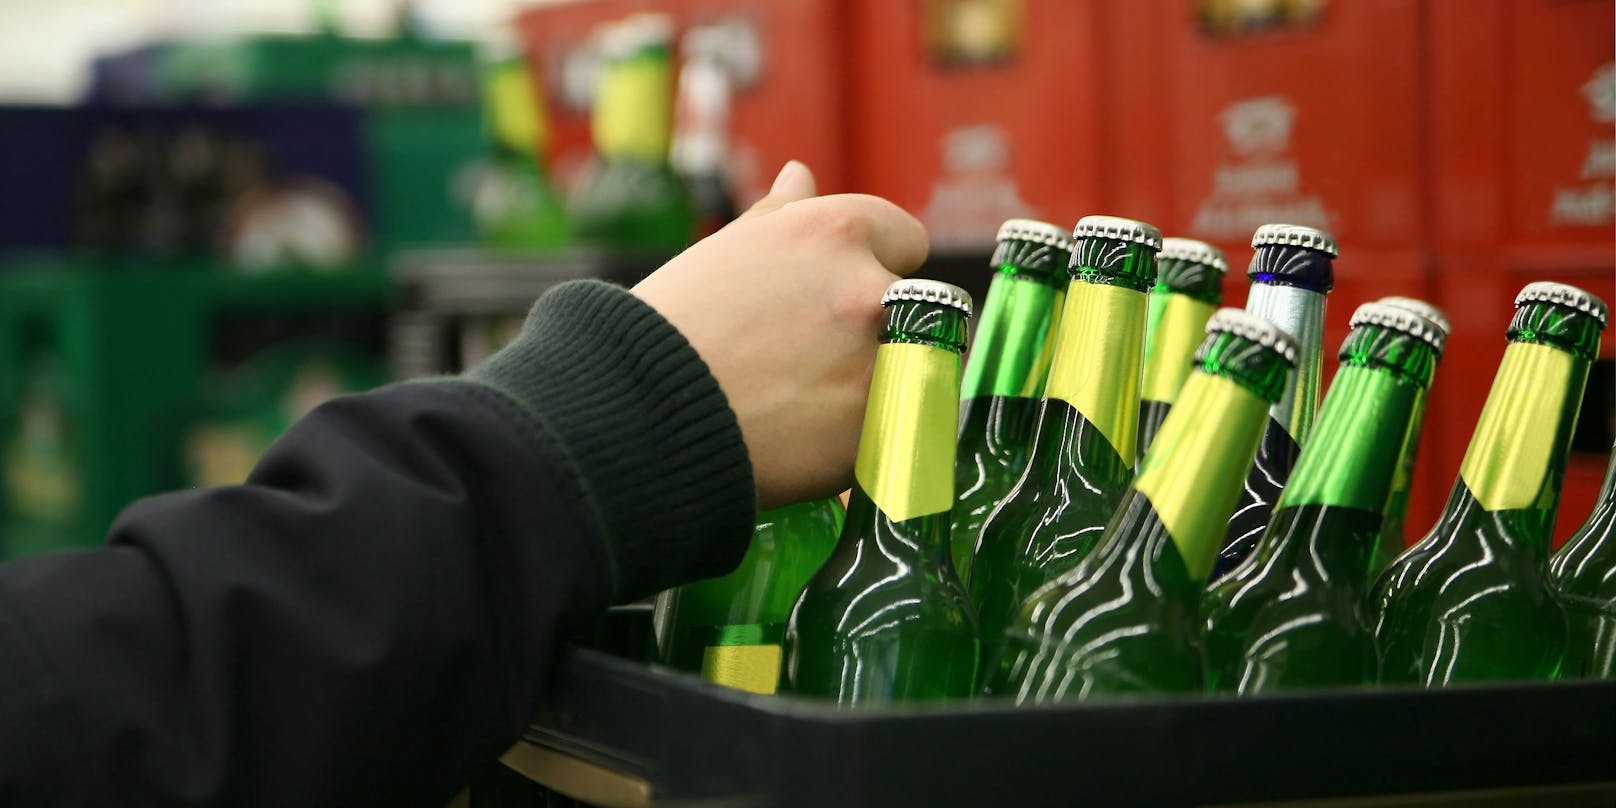 Der Griff zum Bier könnte auch im heimischen Supermarkt bald teurer werden. (Symbolbild)